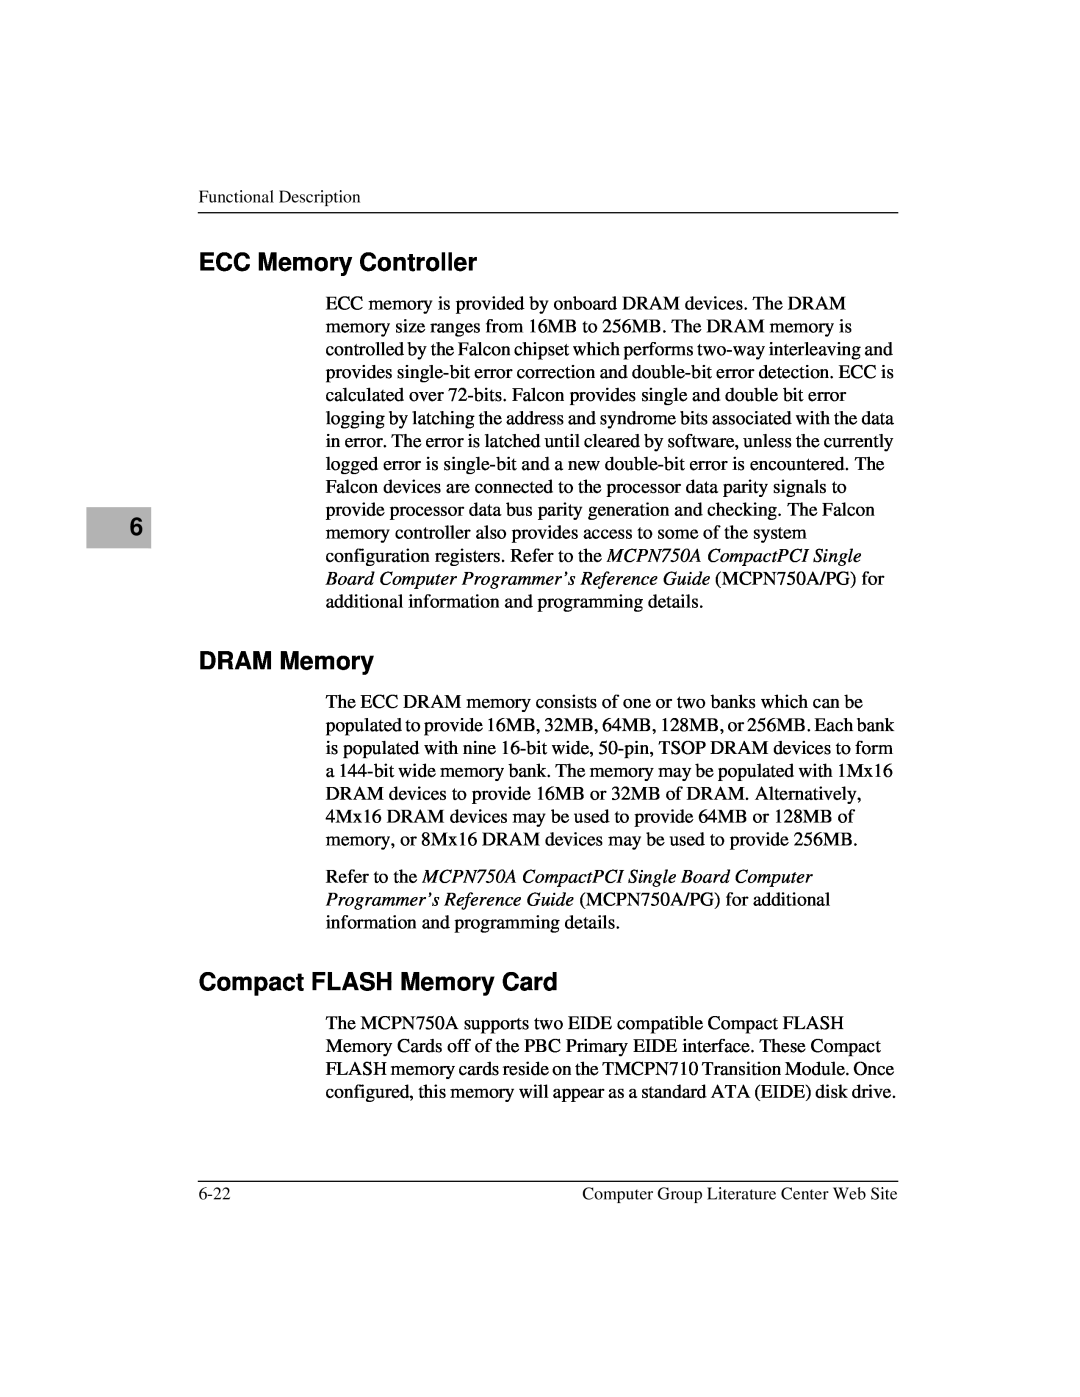 Motorola MCPN750A, IH5 manual ECC Memory Controller, DRAM Memory, Compact FLASH Memory Card 